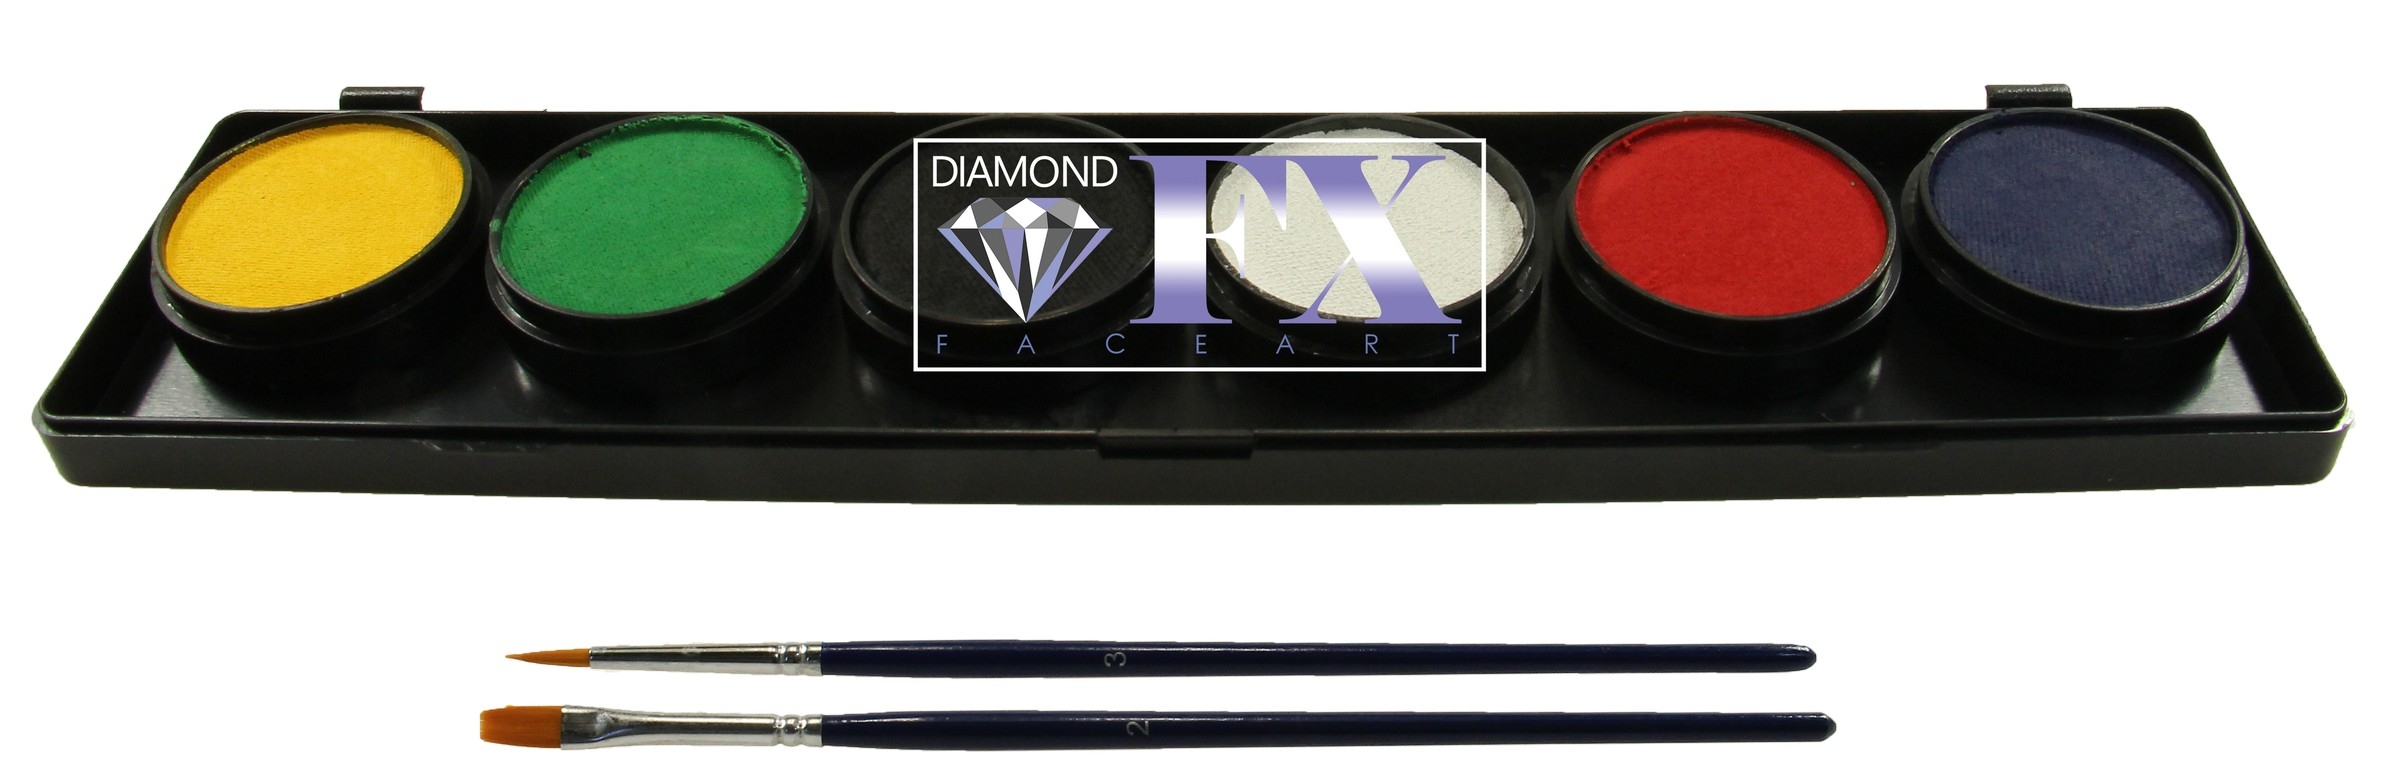 Diamond FX Palette 6 colors Essential (6X10Gram)